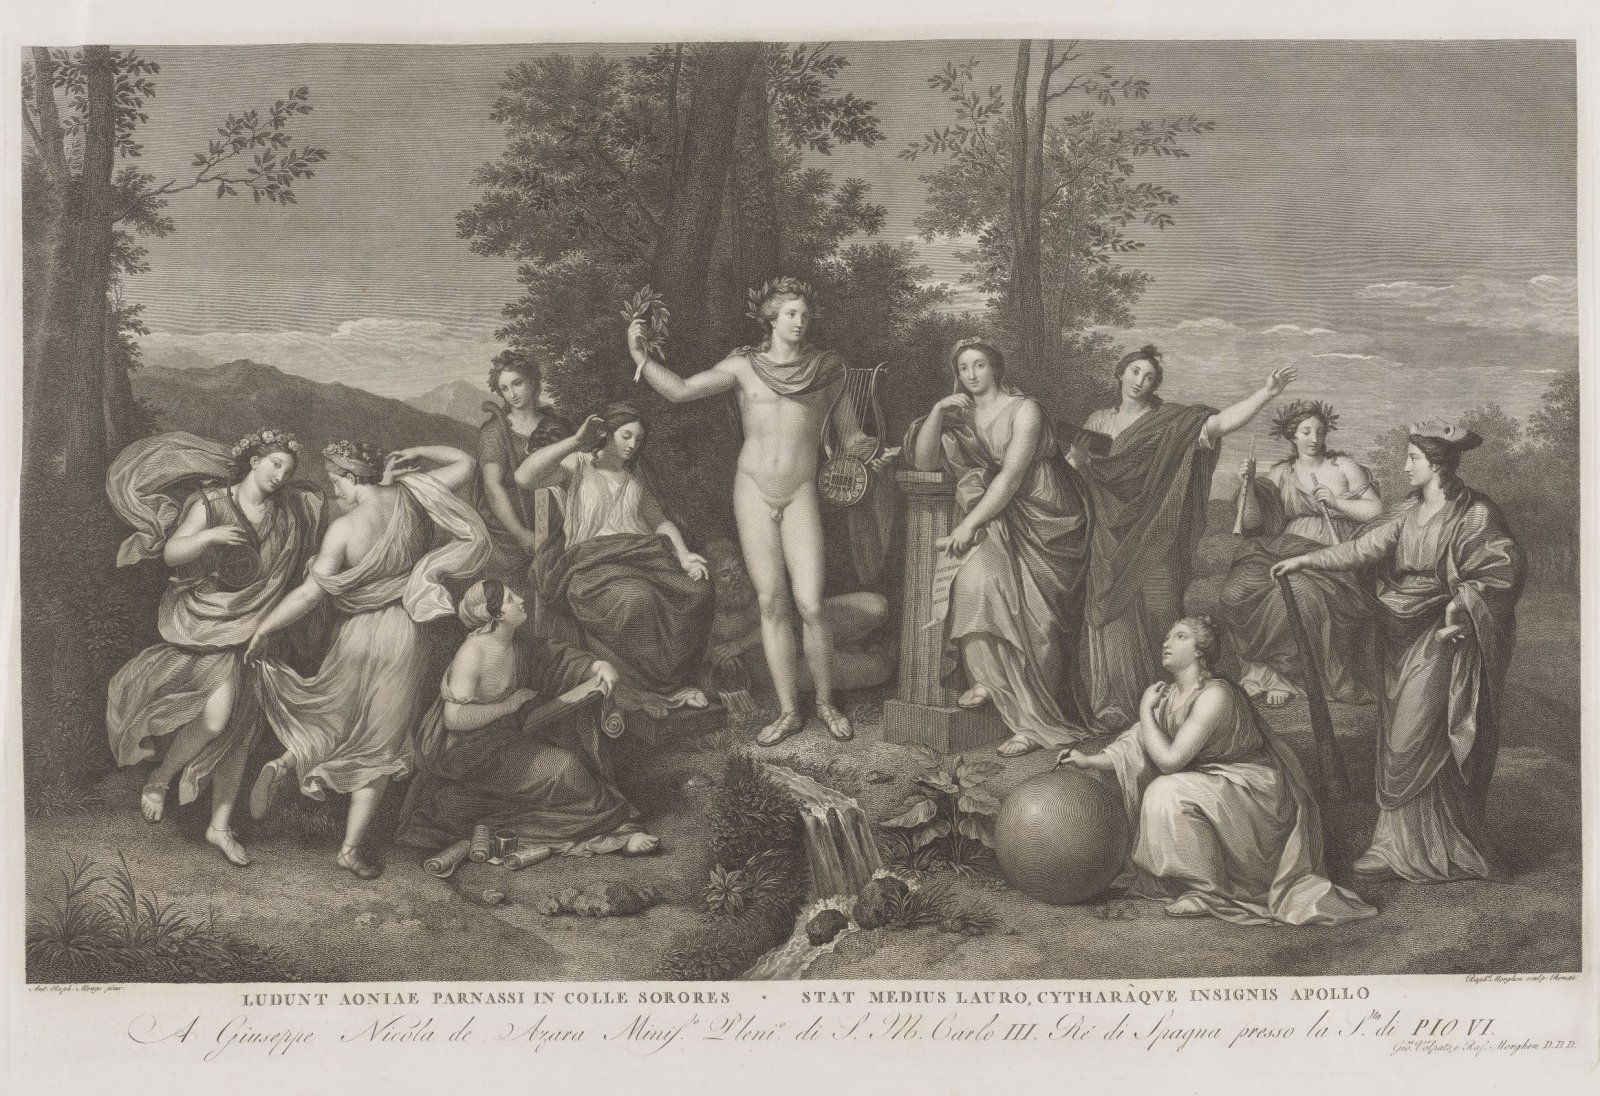 Rafaello Morghen, Apollo i muzy, 1784, grafika jednobarwna, zbiory Biblioteki Narodowej. Polichromia nad łukiem sceny w teatrze Makowskich mogła wyglądać podobnie.